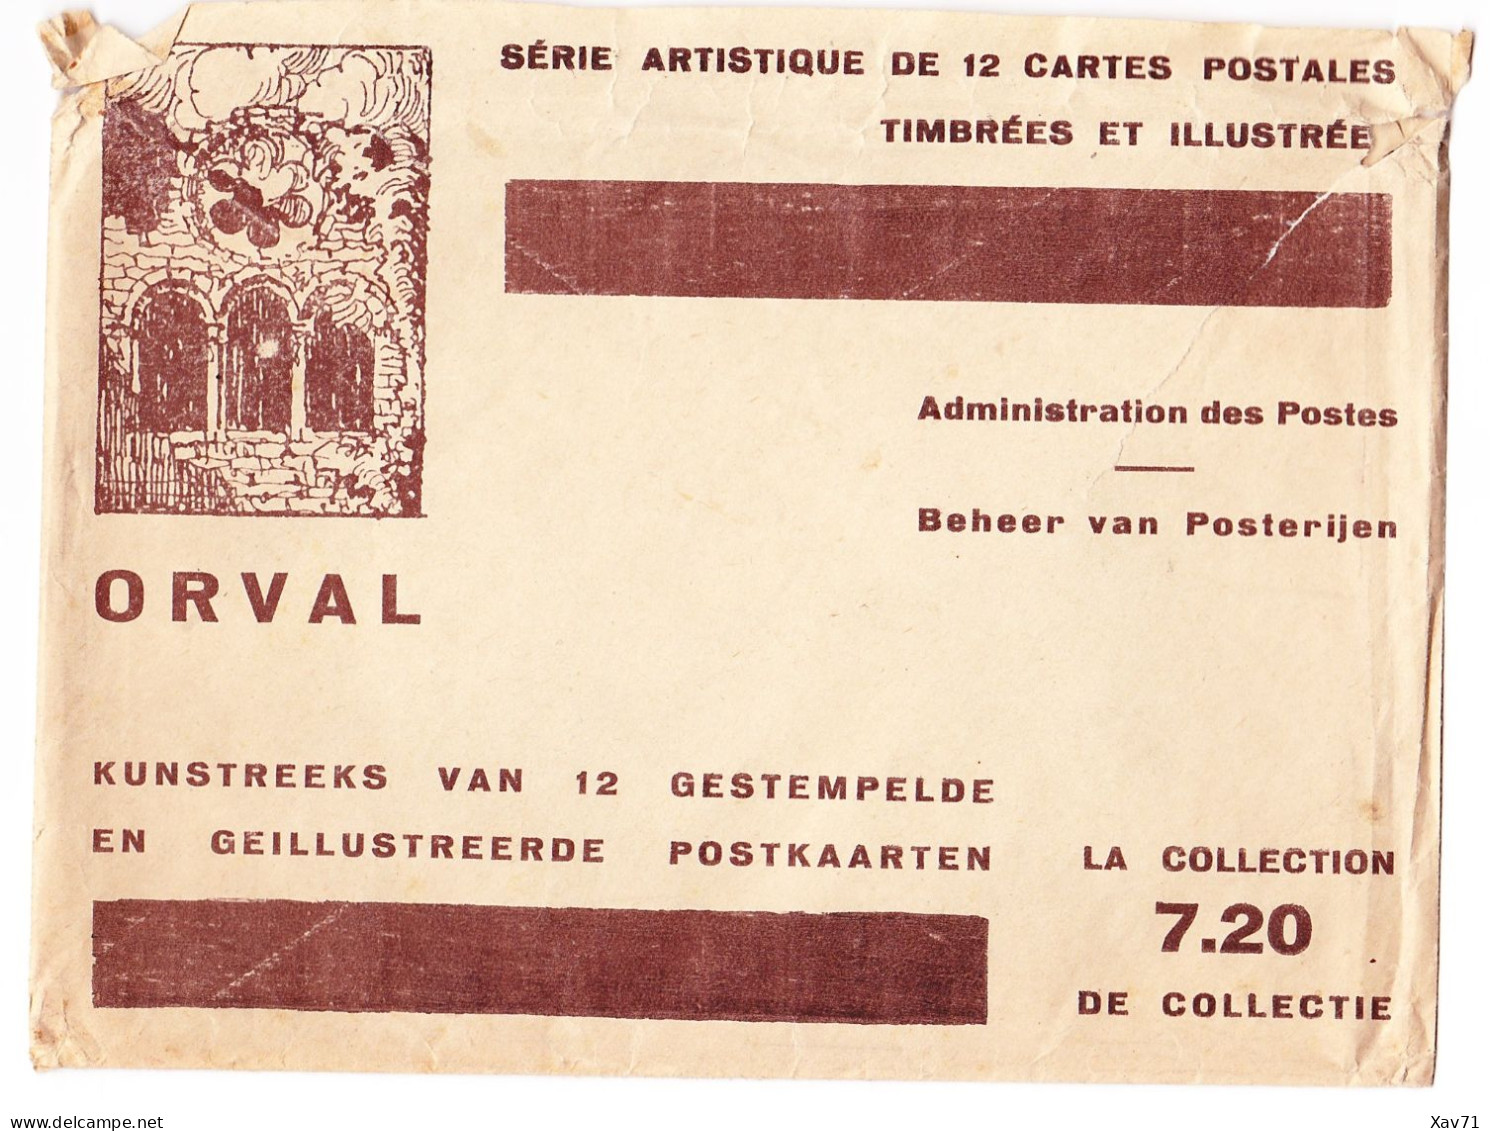 Cartes Postales Orval (1928/29) - Jeux De 12 Cartes Neuves - Florenville